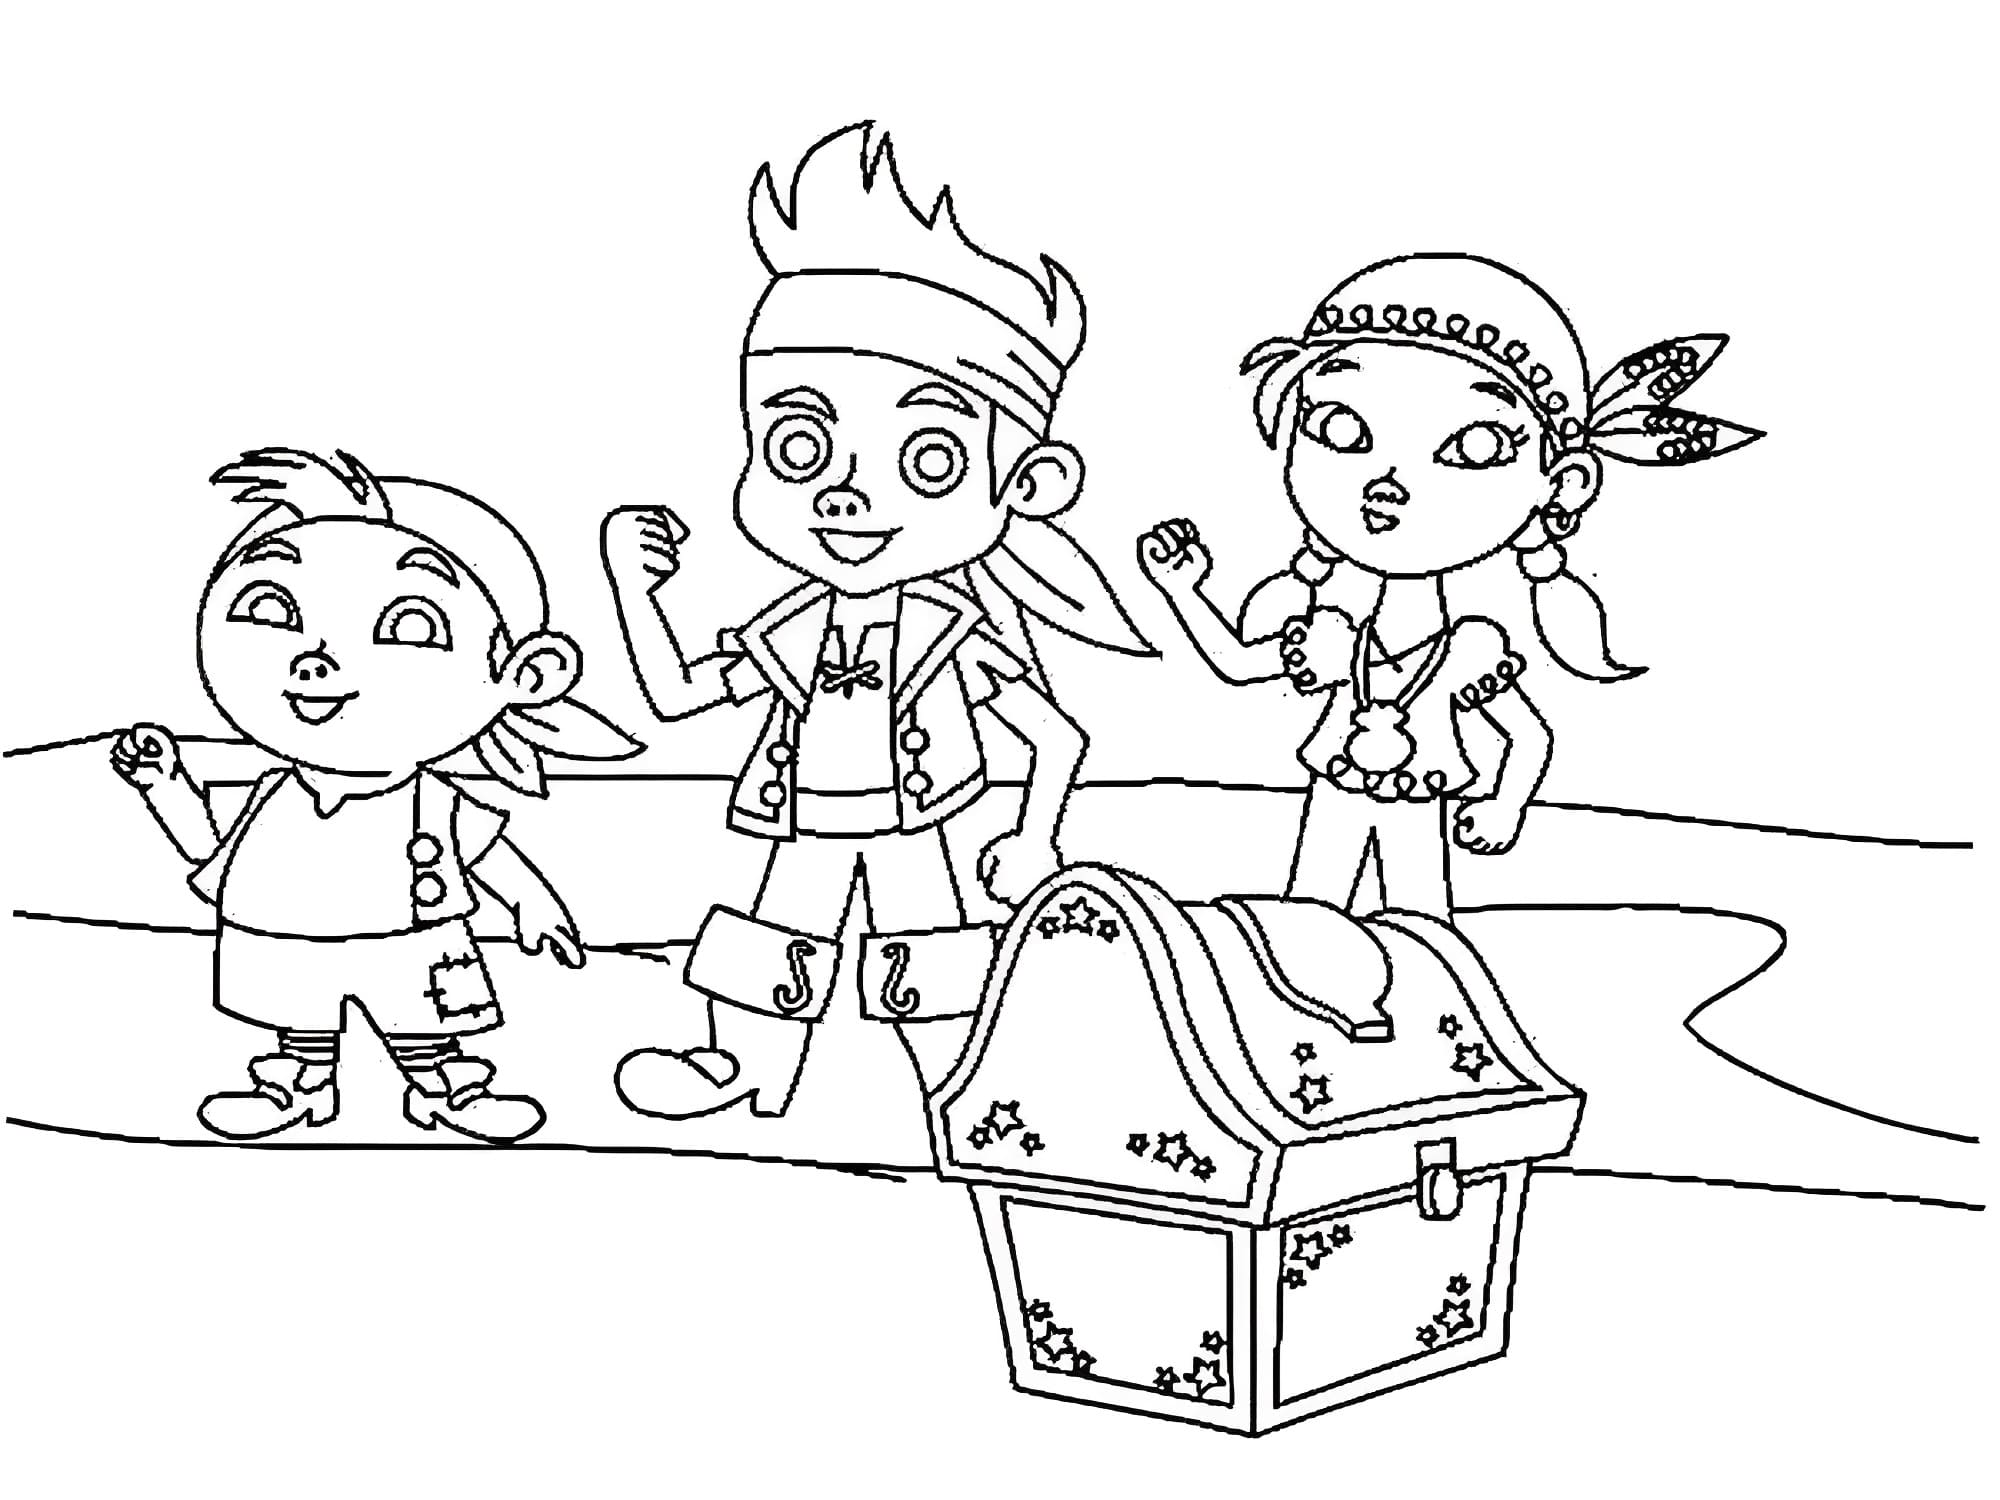 Målarbild Cubby, Izzy och Jake från Jake och Piraterna